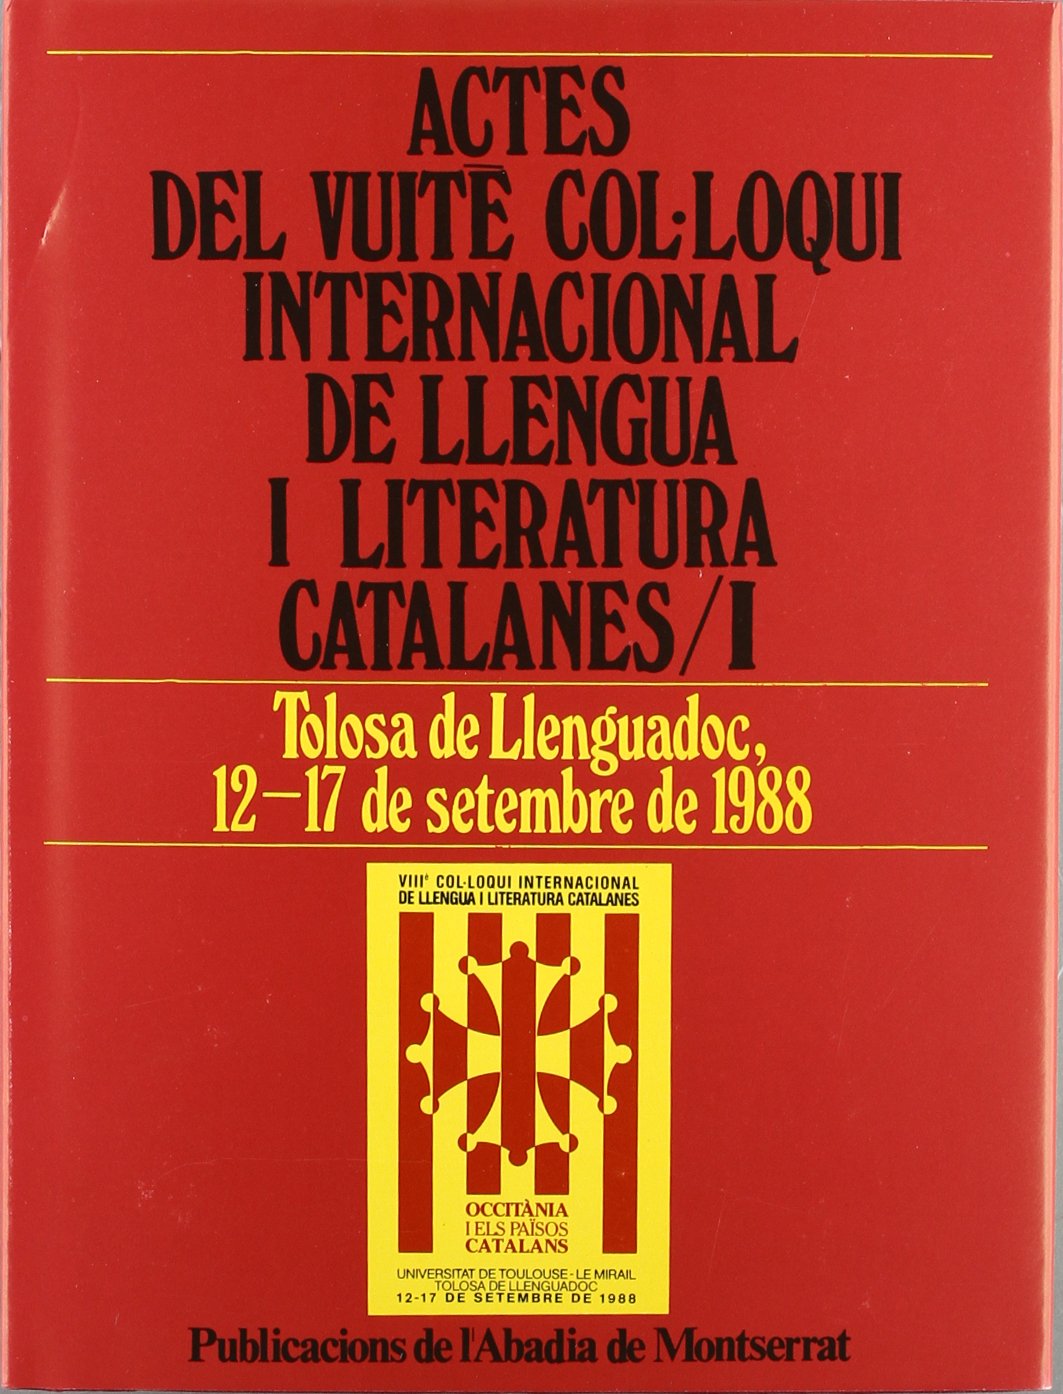 Imagen de portada del libro Actes del Vuitè Col.loqui International de Llengua i Literatura Catalanes, Tolosa de Llenguadoc, 12-17 de setembre de 1988